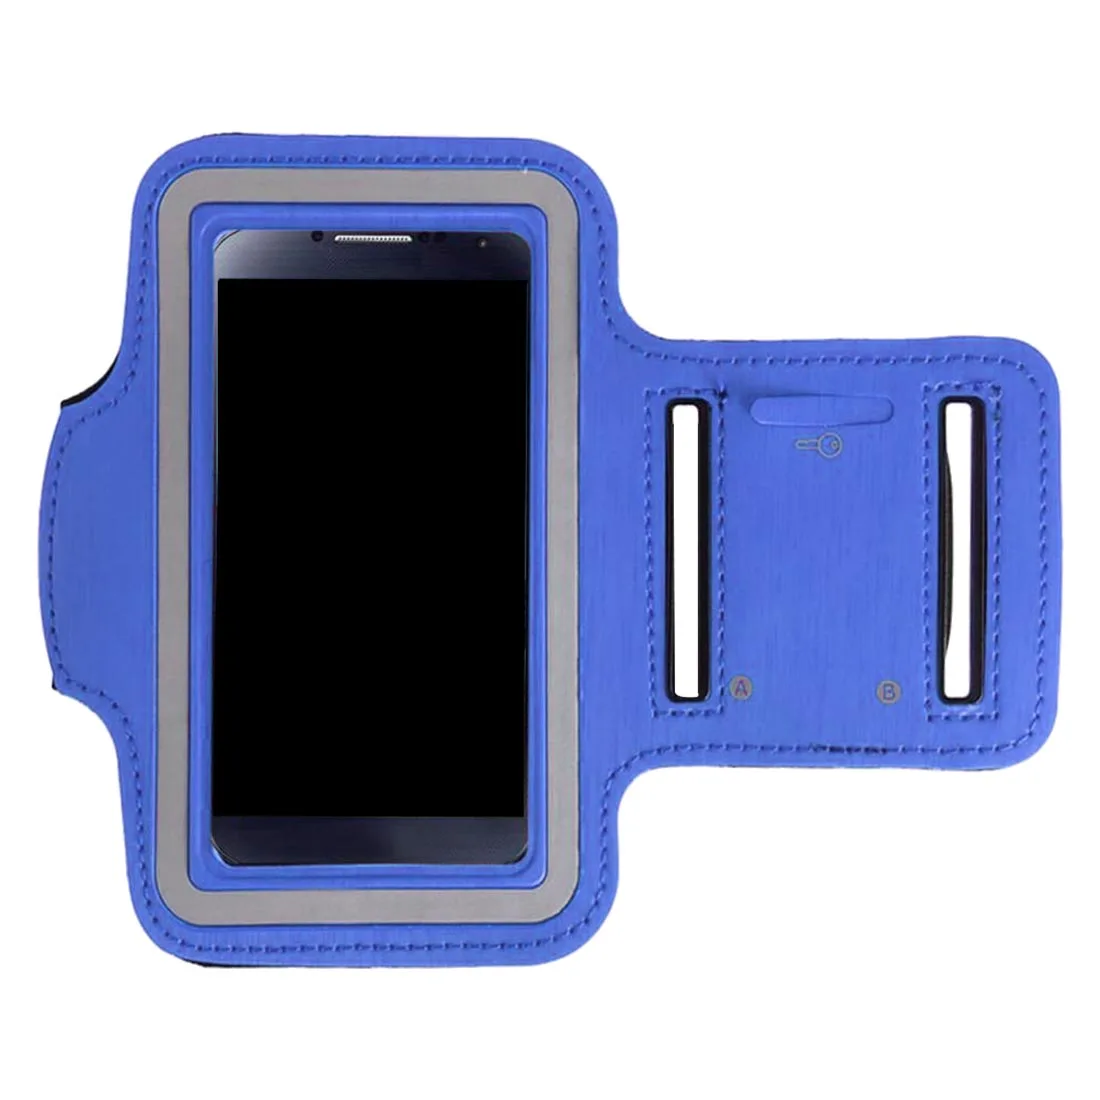 Новые сумки для бега для мужчин и женщин, нарукавная повязка с сенсорным экраном для сотового телефона, чехол для телефона, спортивные аксессуары для смартфона 7 Plus - Цвет: Blue